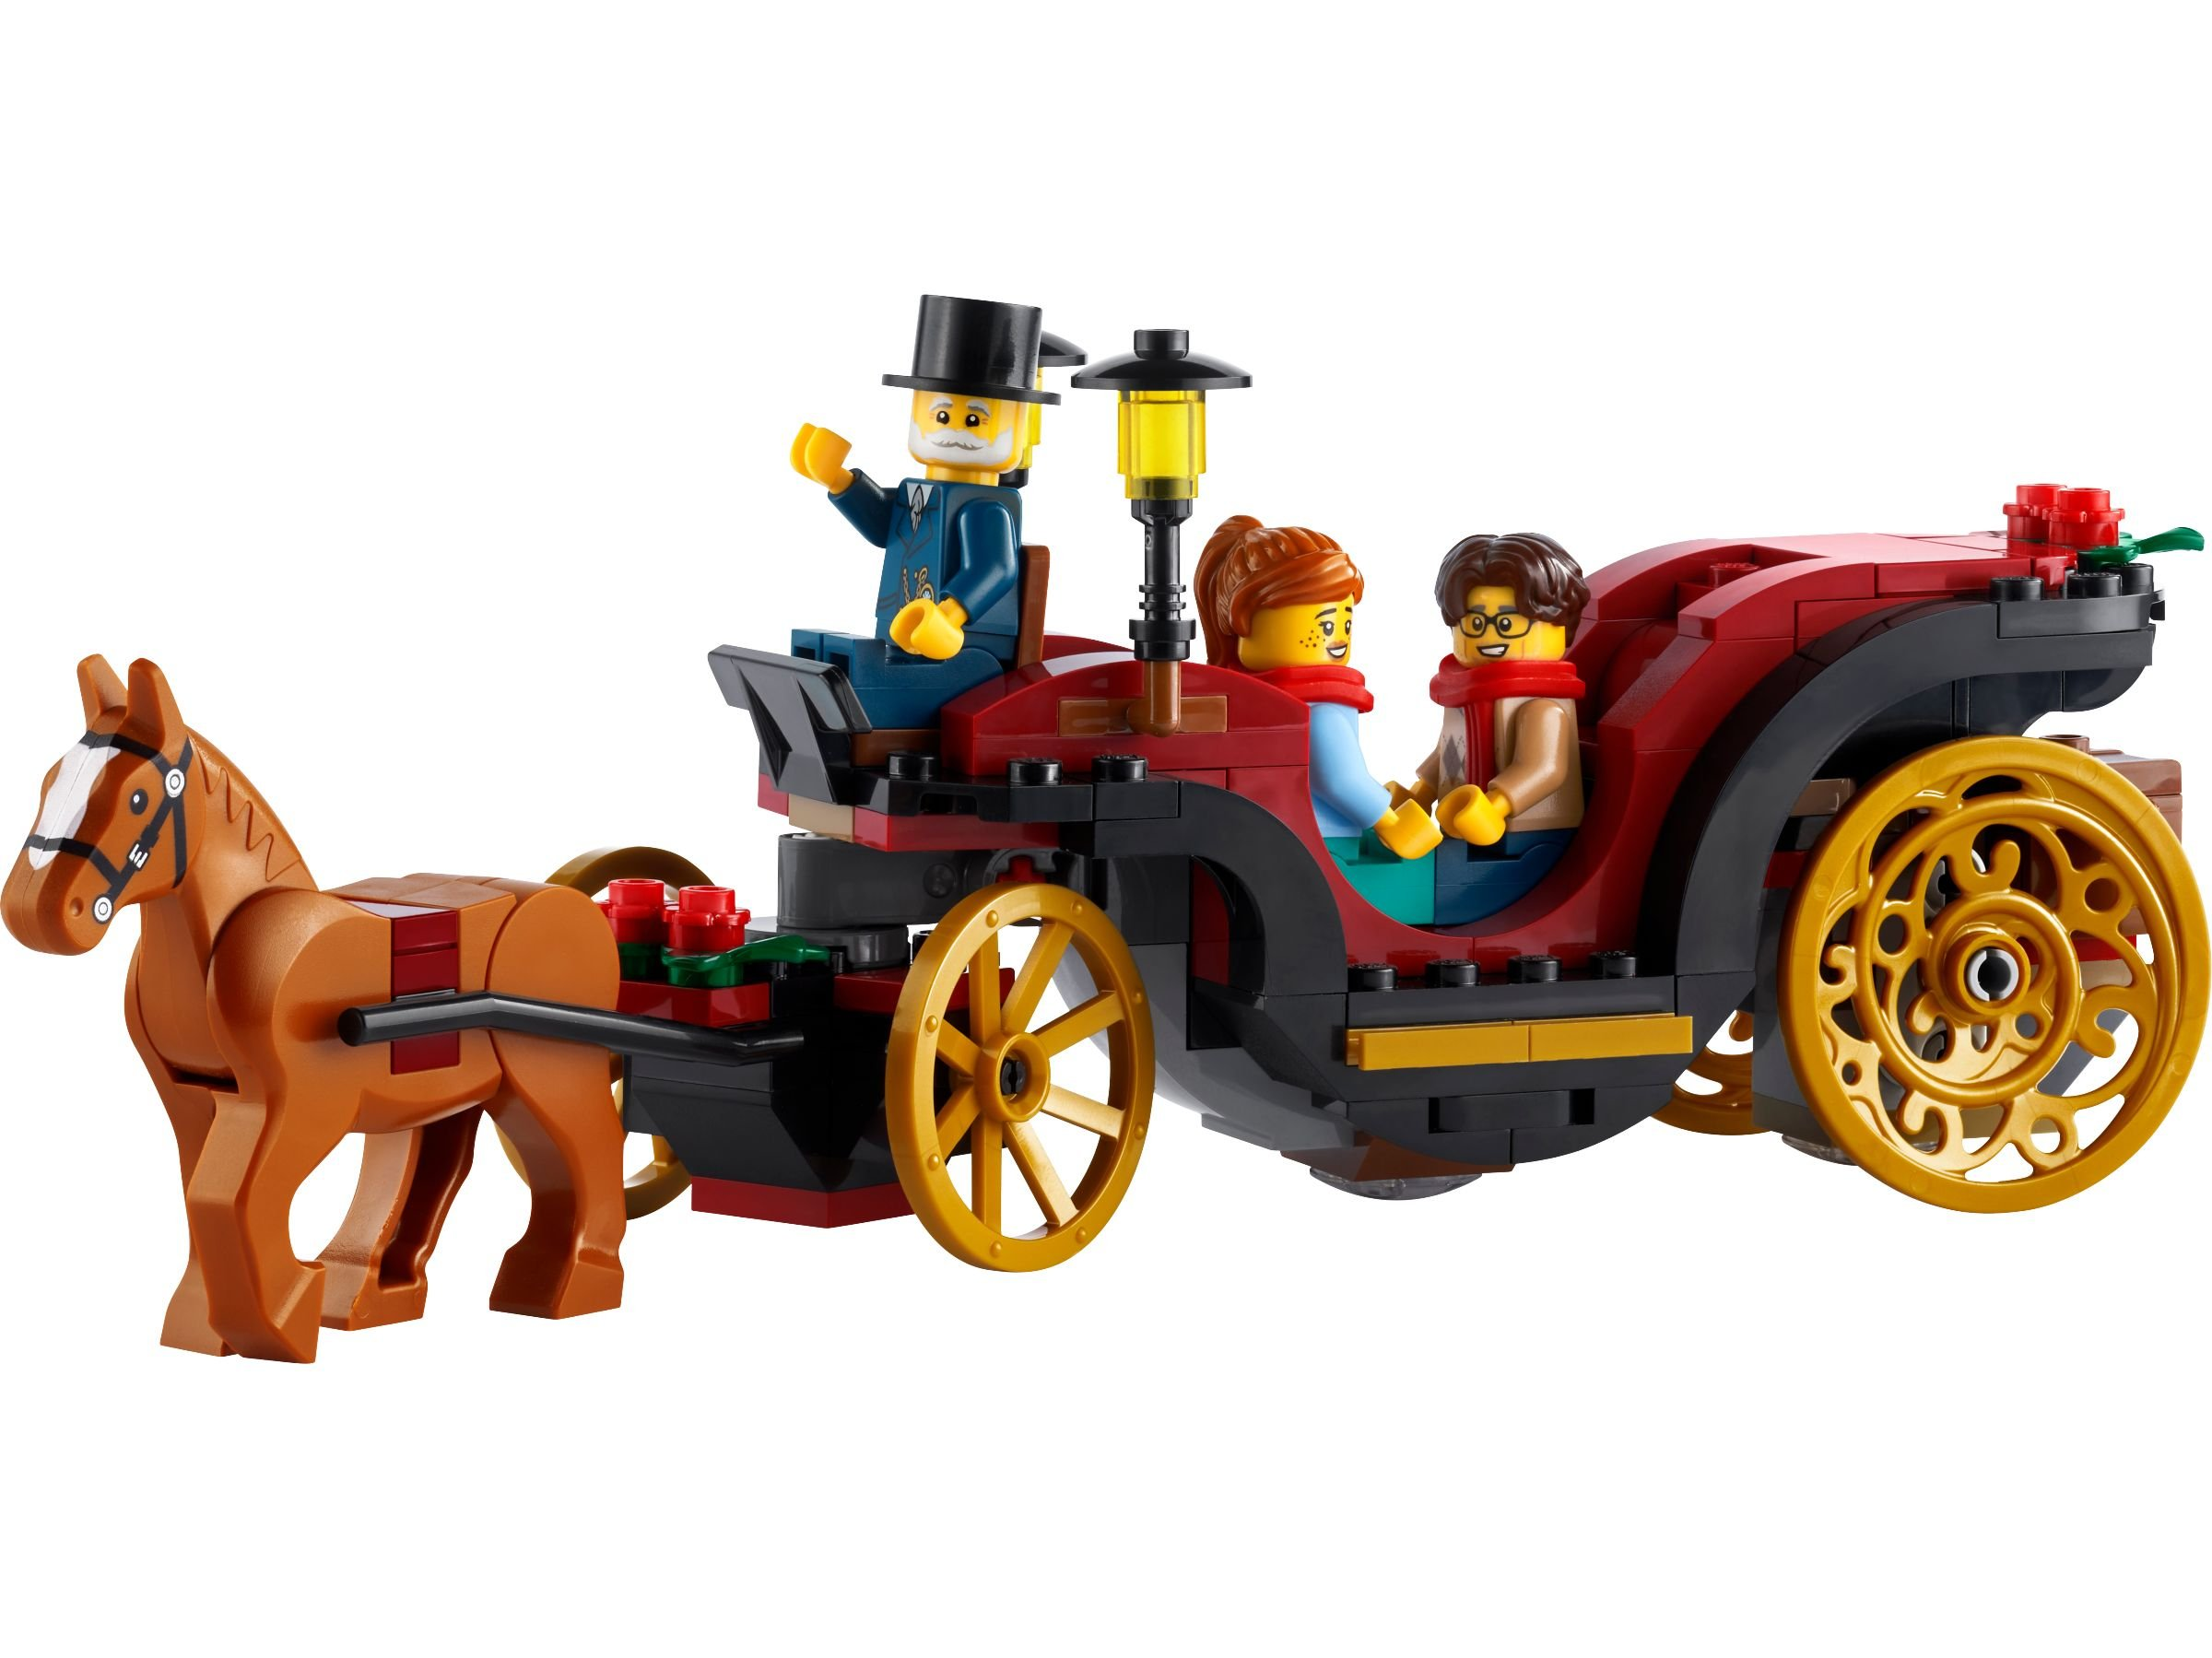 LEGO 40603 Bausatz Weihnachtskutsche